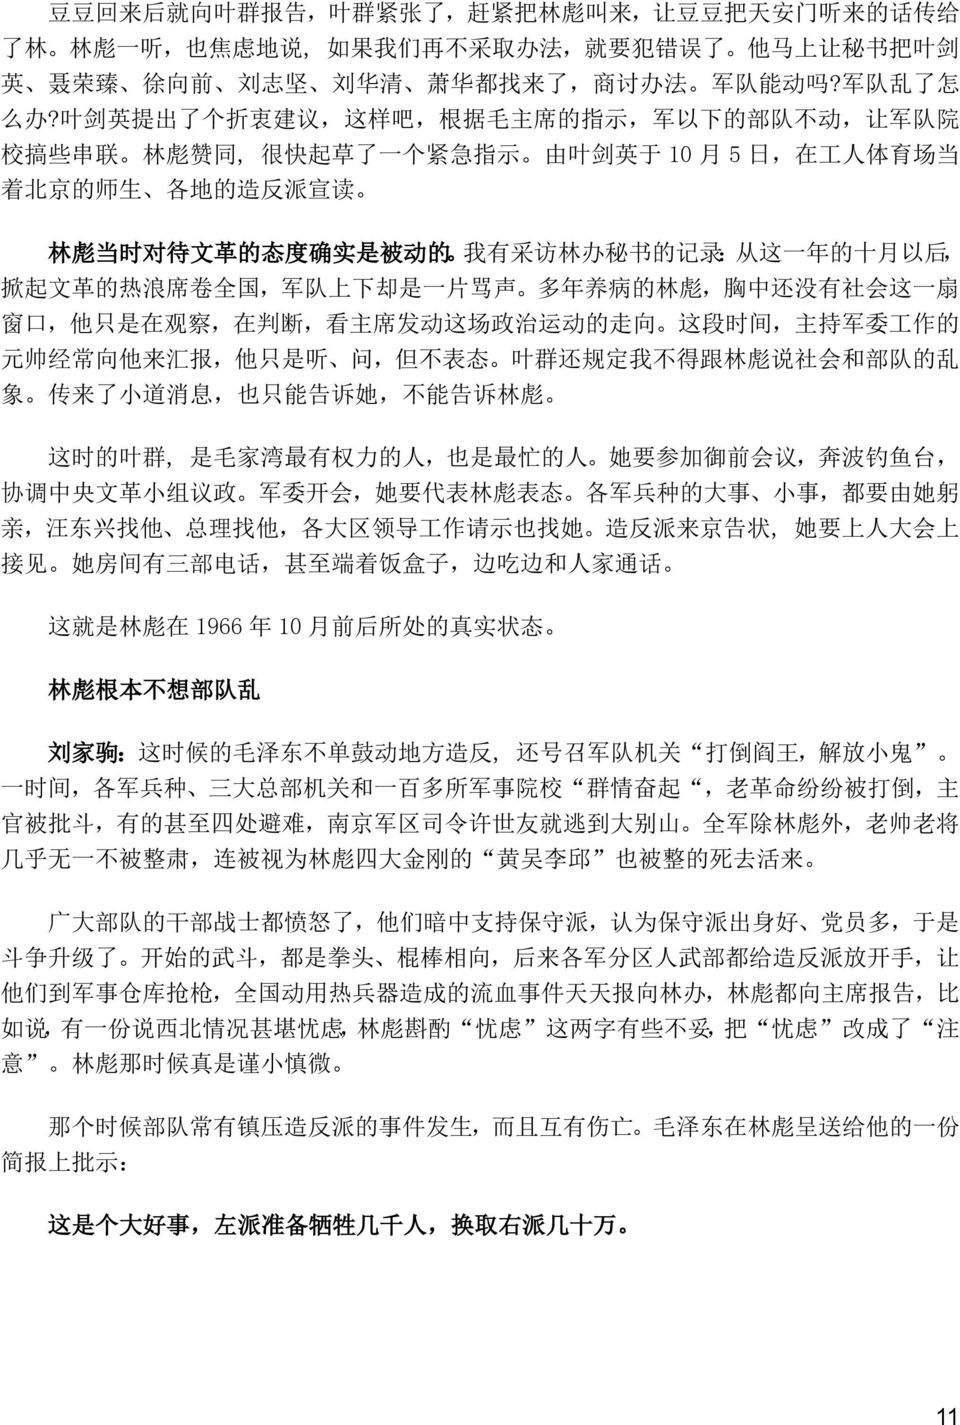 叶 剑 英 提 出 了 个 折 衷 建 议, 这 样 吧, 根 据 毛 主 席 的 指 示, 军 以 下 的 部 队 不 动, 让 军 队 院 校 搞 些 串 联 林 彪 赞 同, 很 快 起 草 了 一 个 紧 急 指 示 由 叶 剑 英 于 10 月 5 日, 在 工 人 体 育 场 当 着 北 京 的 师 生 各 地 的 造 反 派 宣 读 林 彪 当 时 对 待 文 革 的 态 度 确